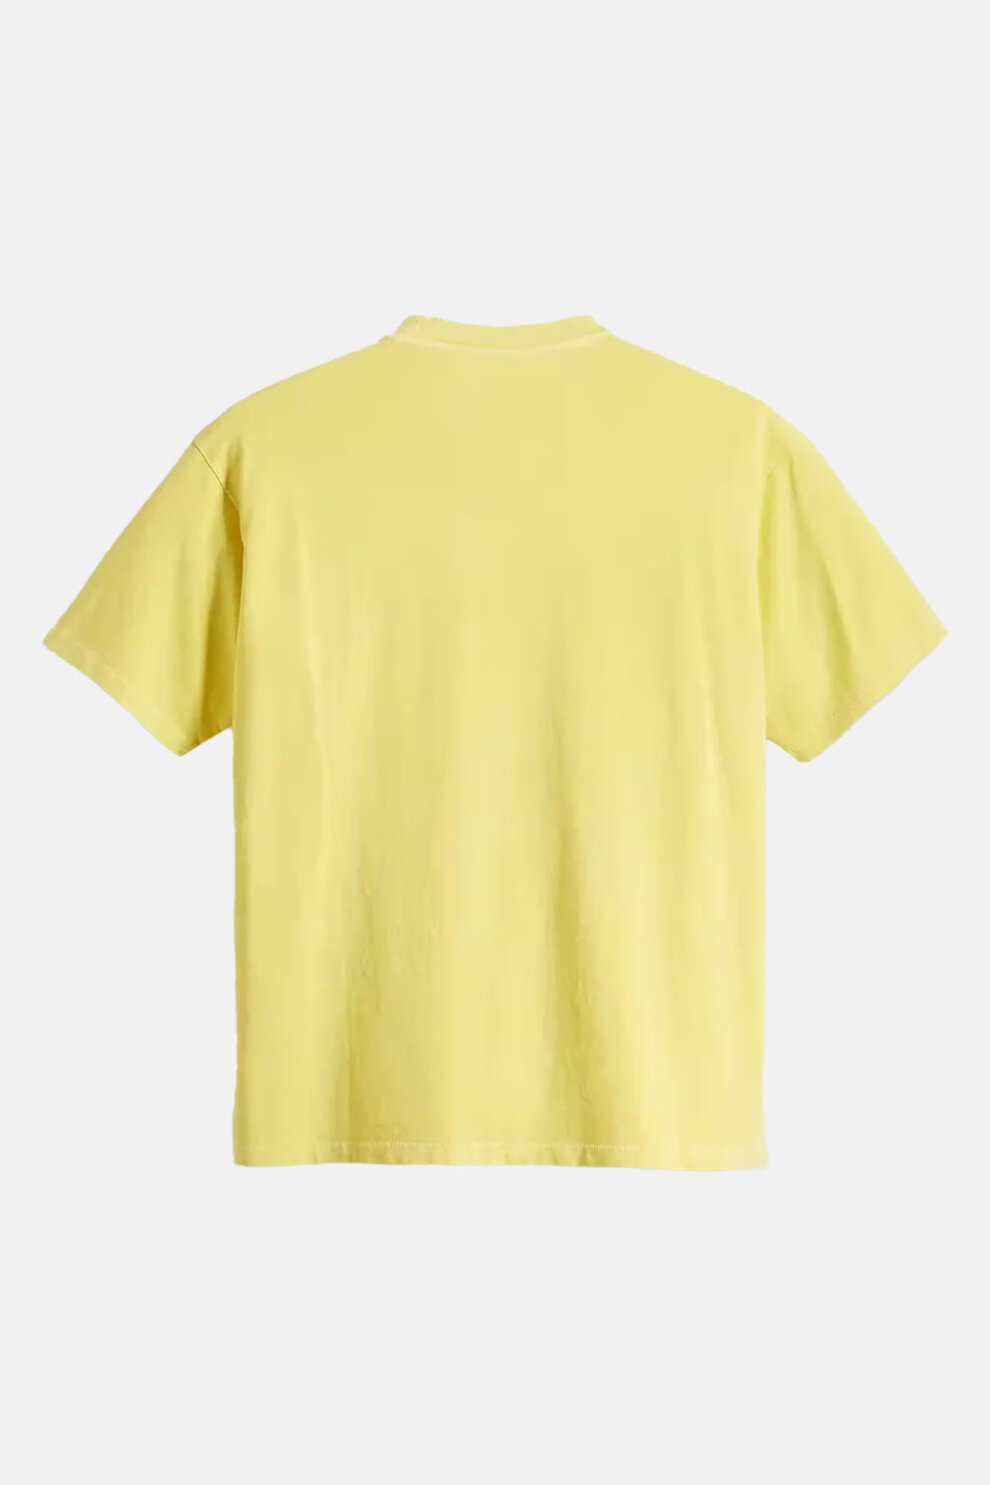 MUŠKARCI - Majice - Levi's majica - Kratki rukavi - Žuta